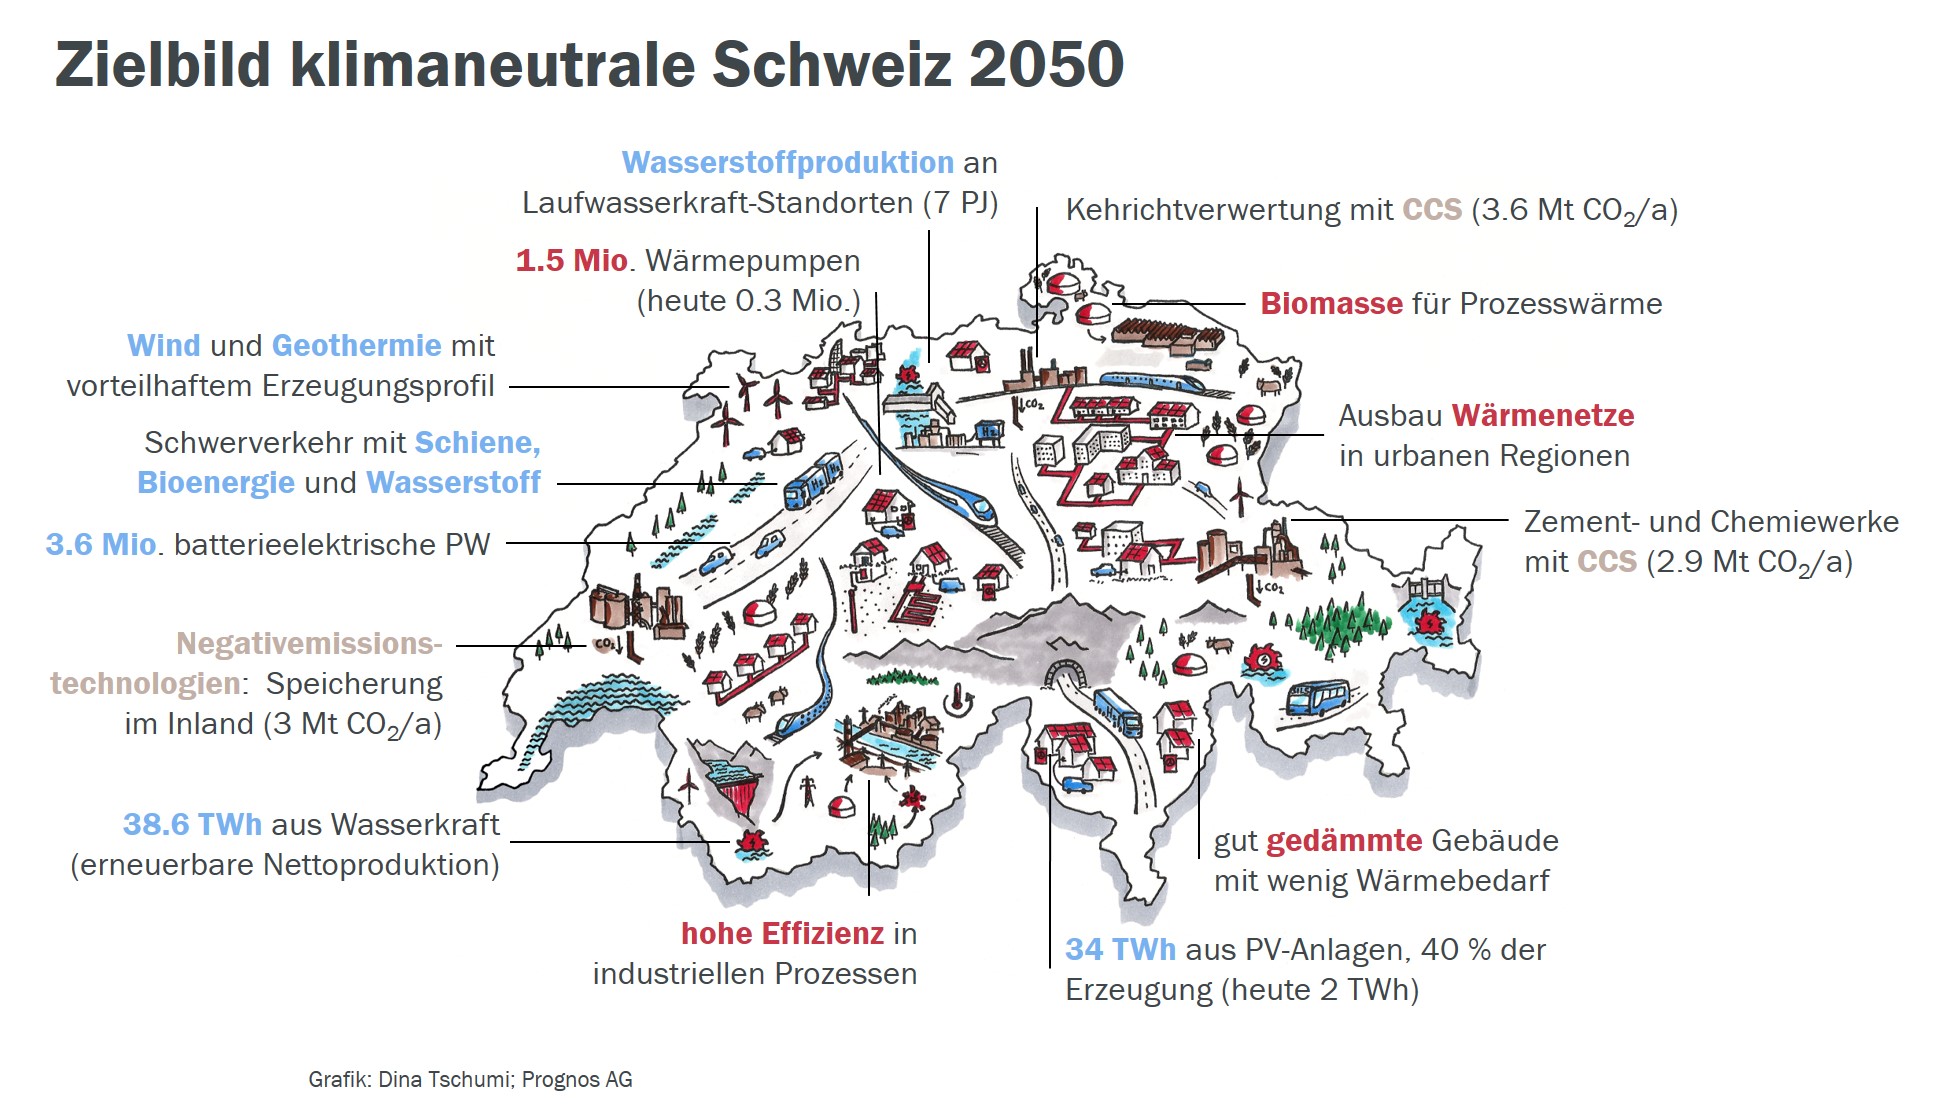 La strategia di contrasto al cambiamento climatico della Svizzera per il 2050